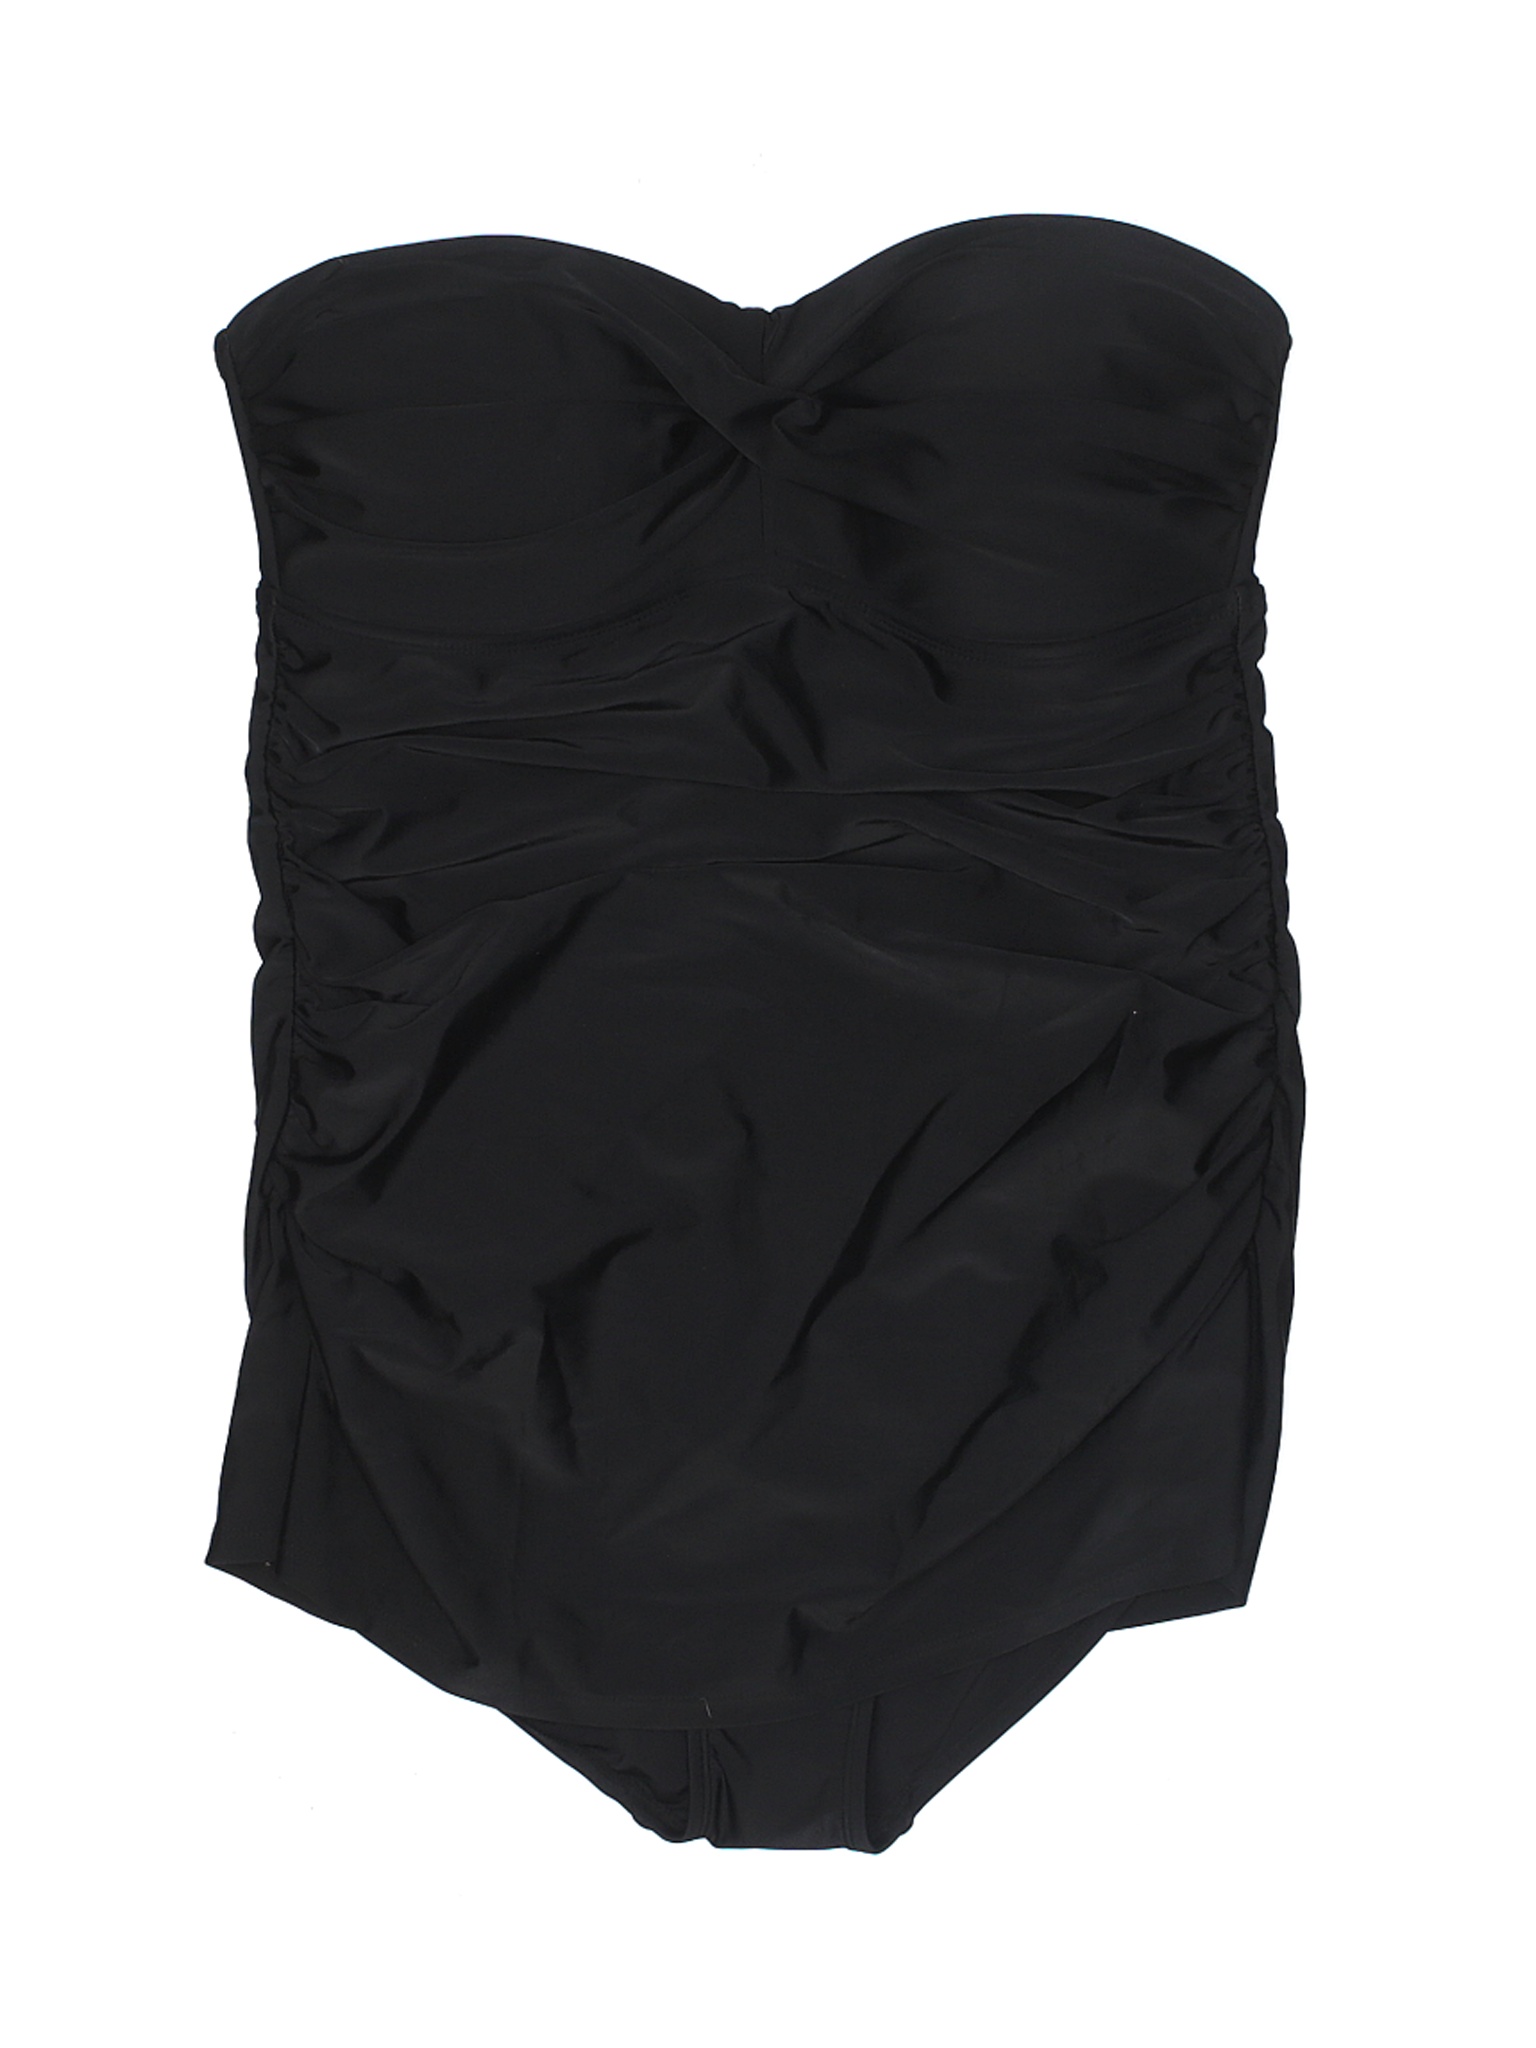 NWT Merona Women Black One Piece Swimsuit XL | eBay